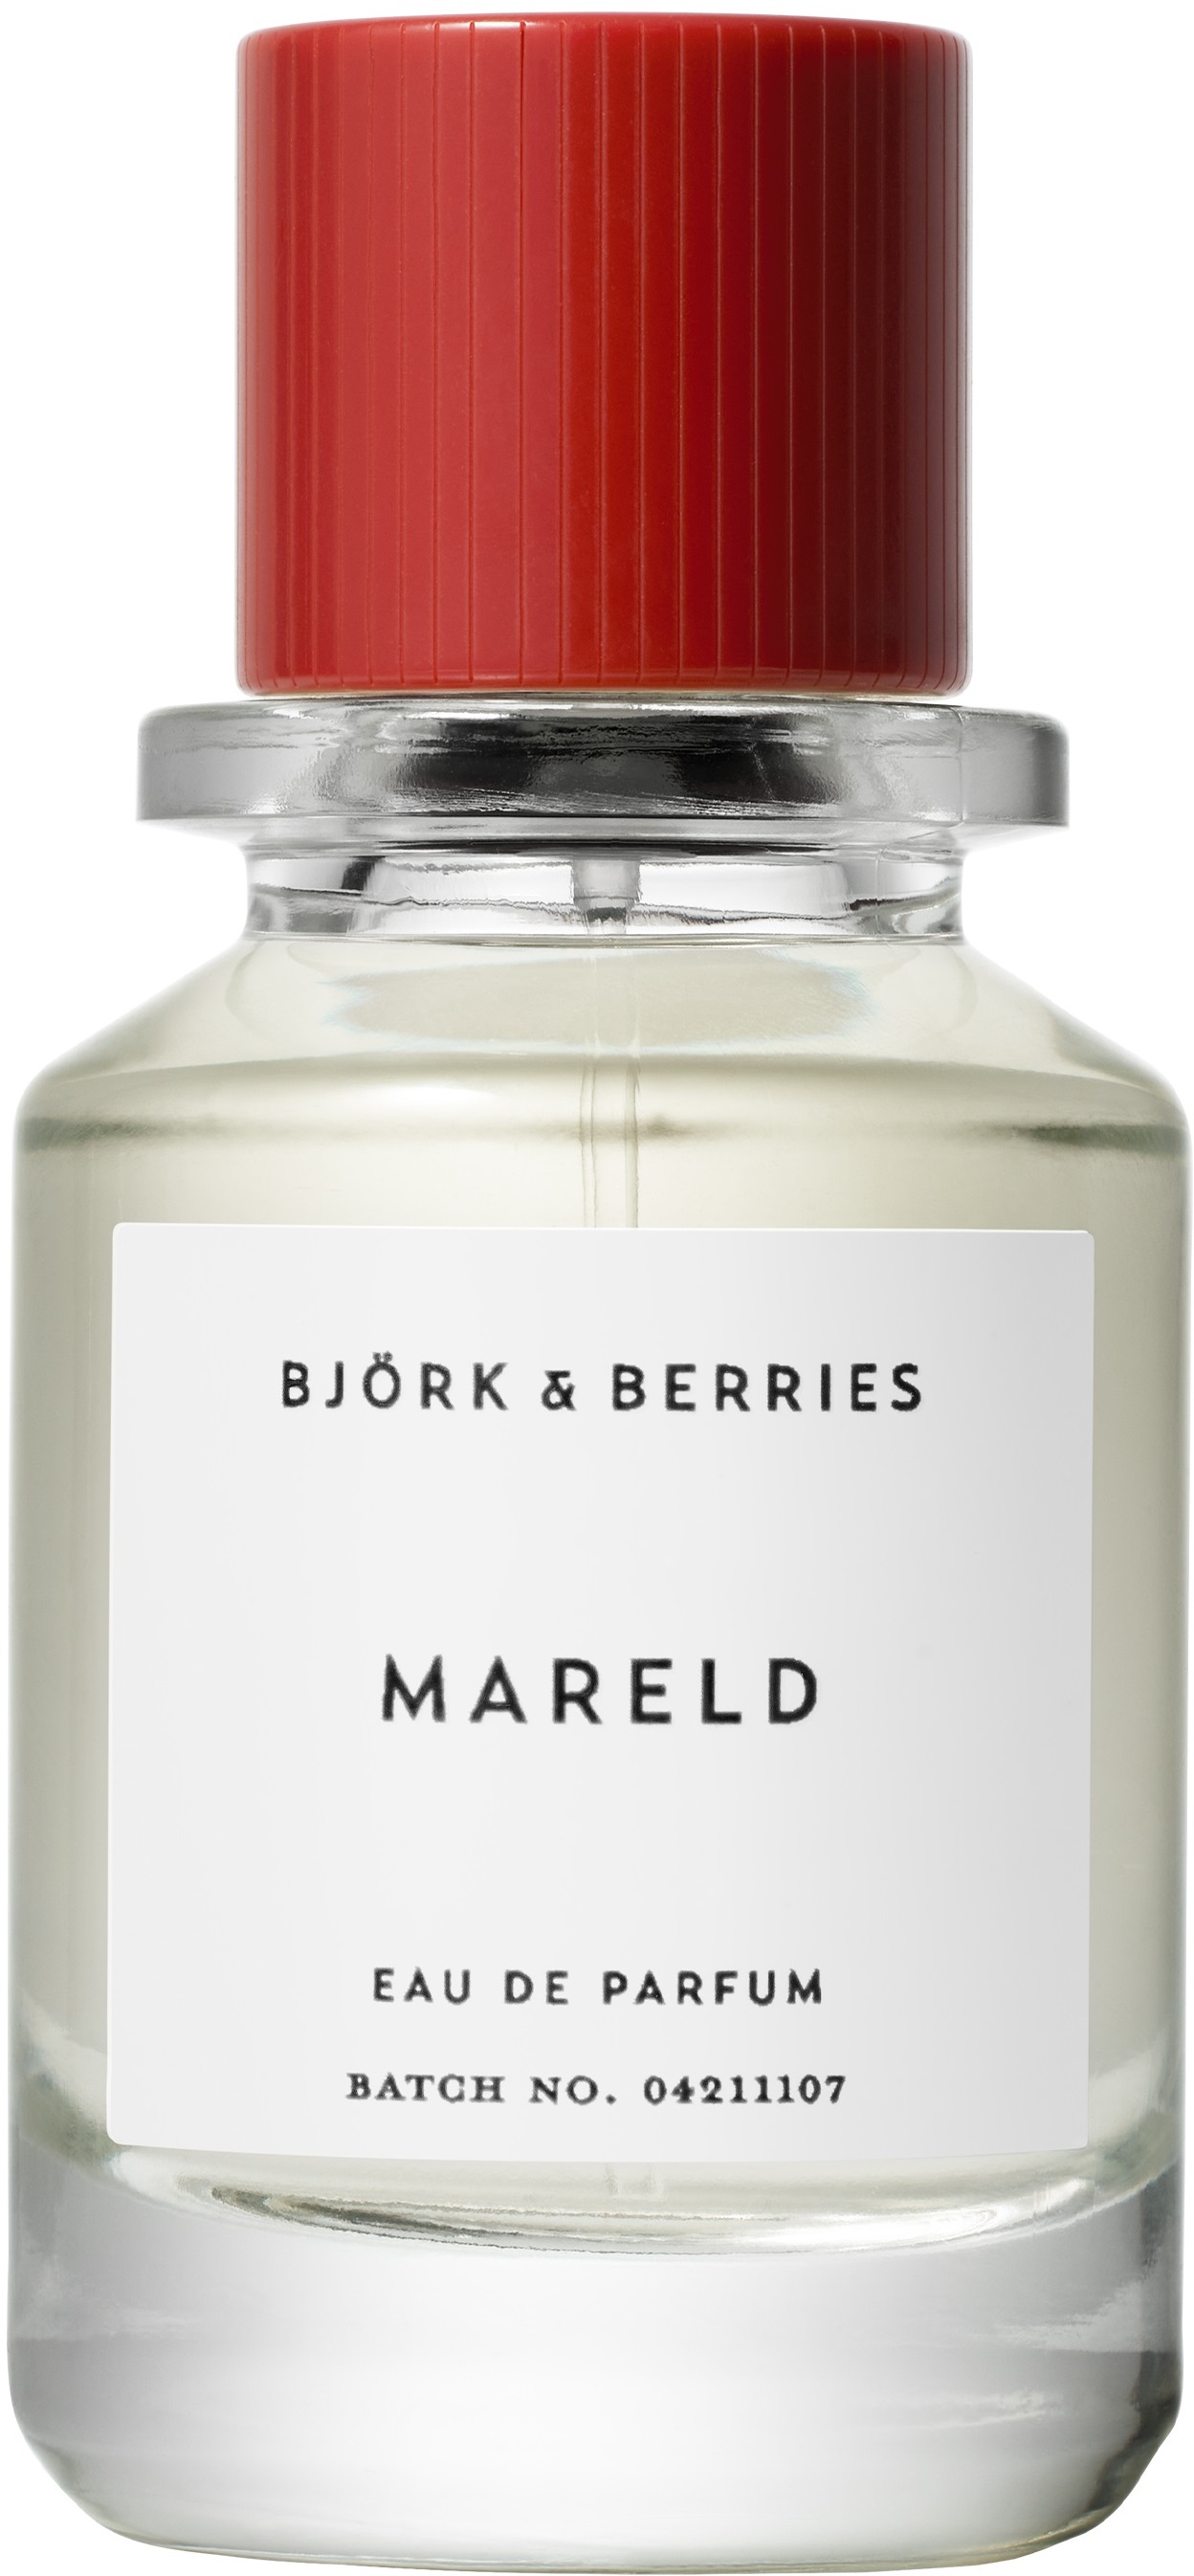 bjork & berries mareld woda perfumowana 50 ml   